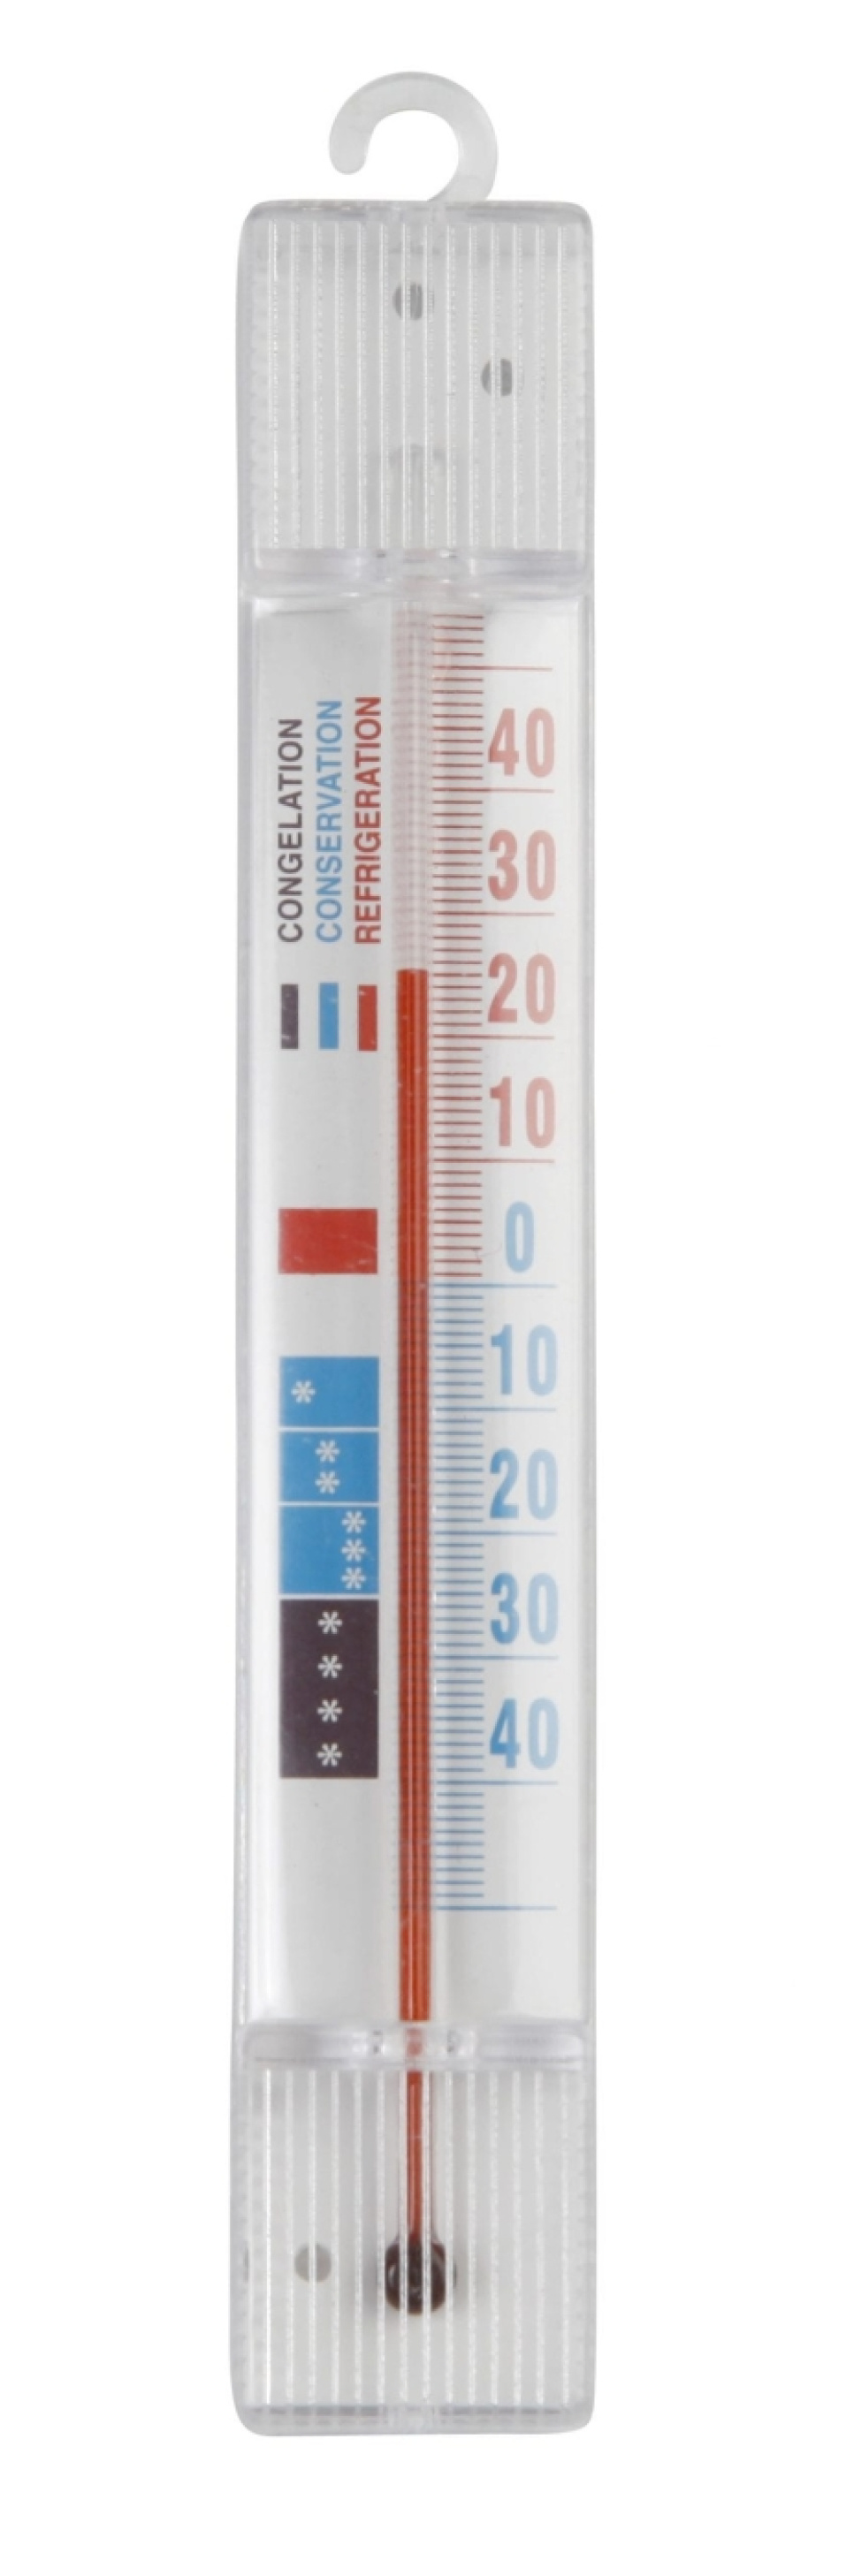 Termometr do zamrażarki w grupie Gotowanie / Miarki i mierniki / Termometry kuchenne / Termometry proste w The Kitchen Lab (1071-10156)